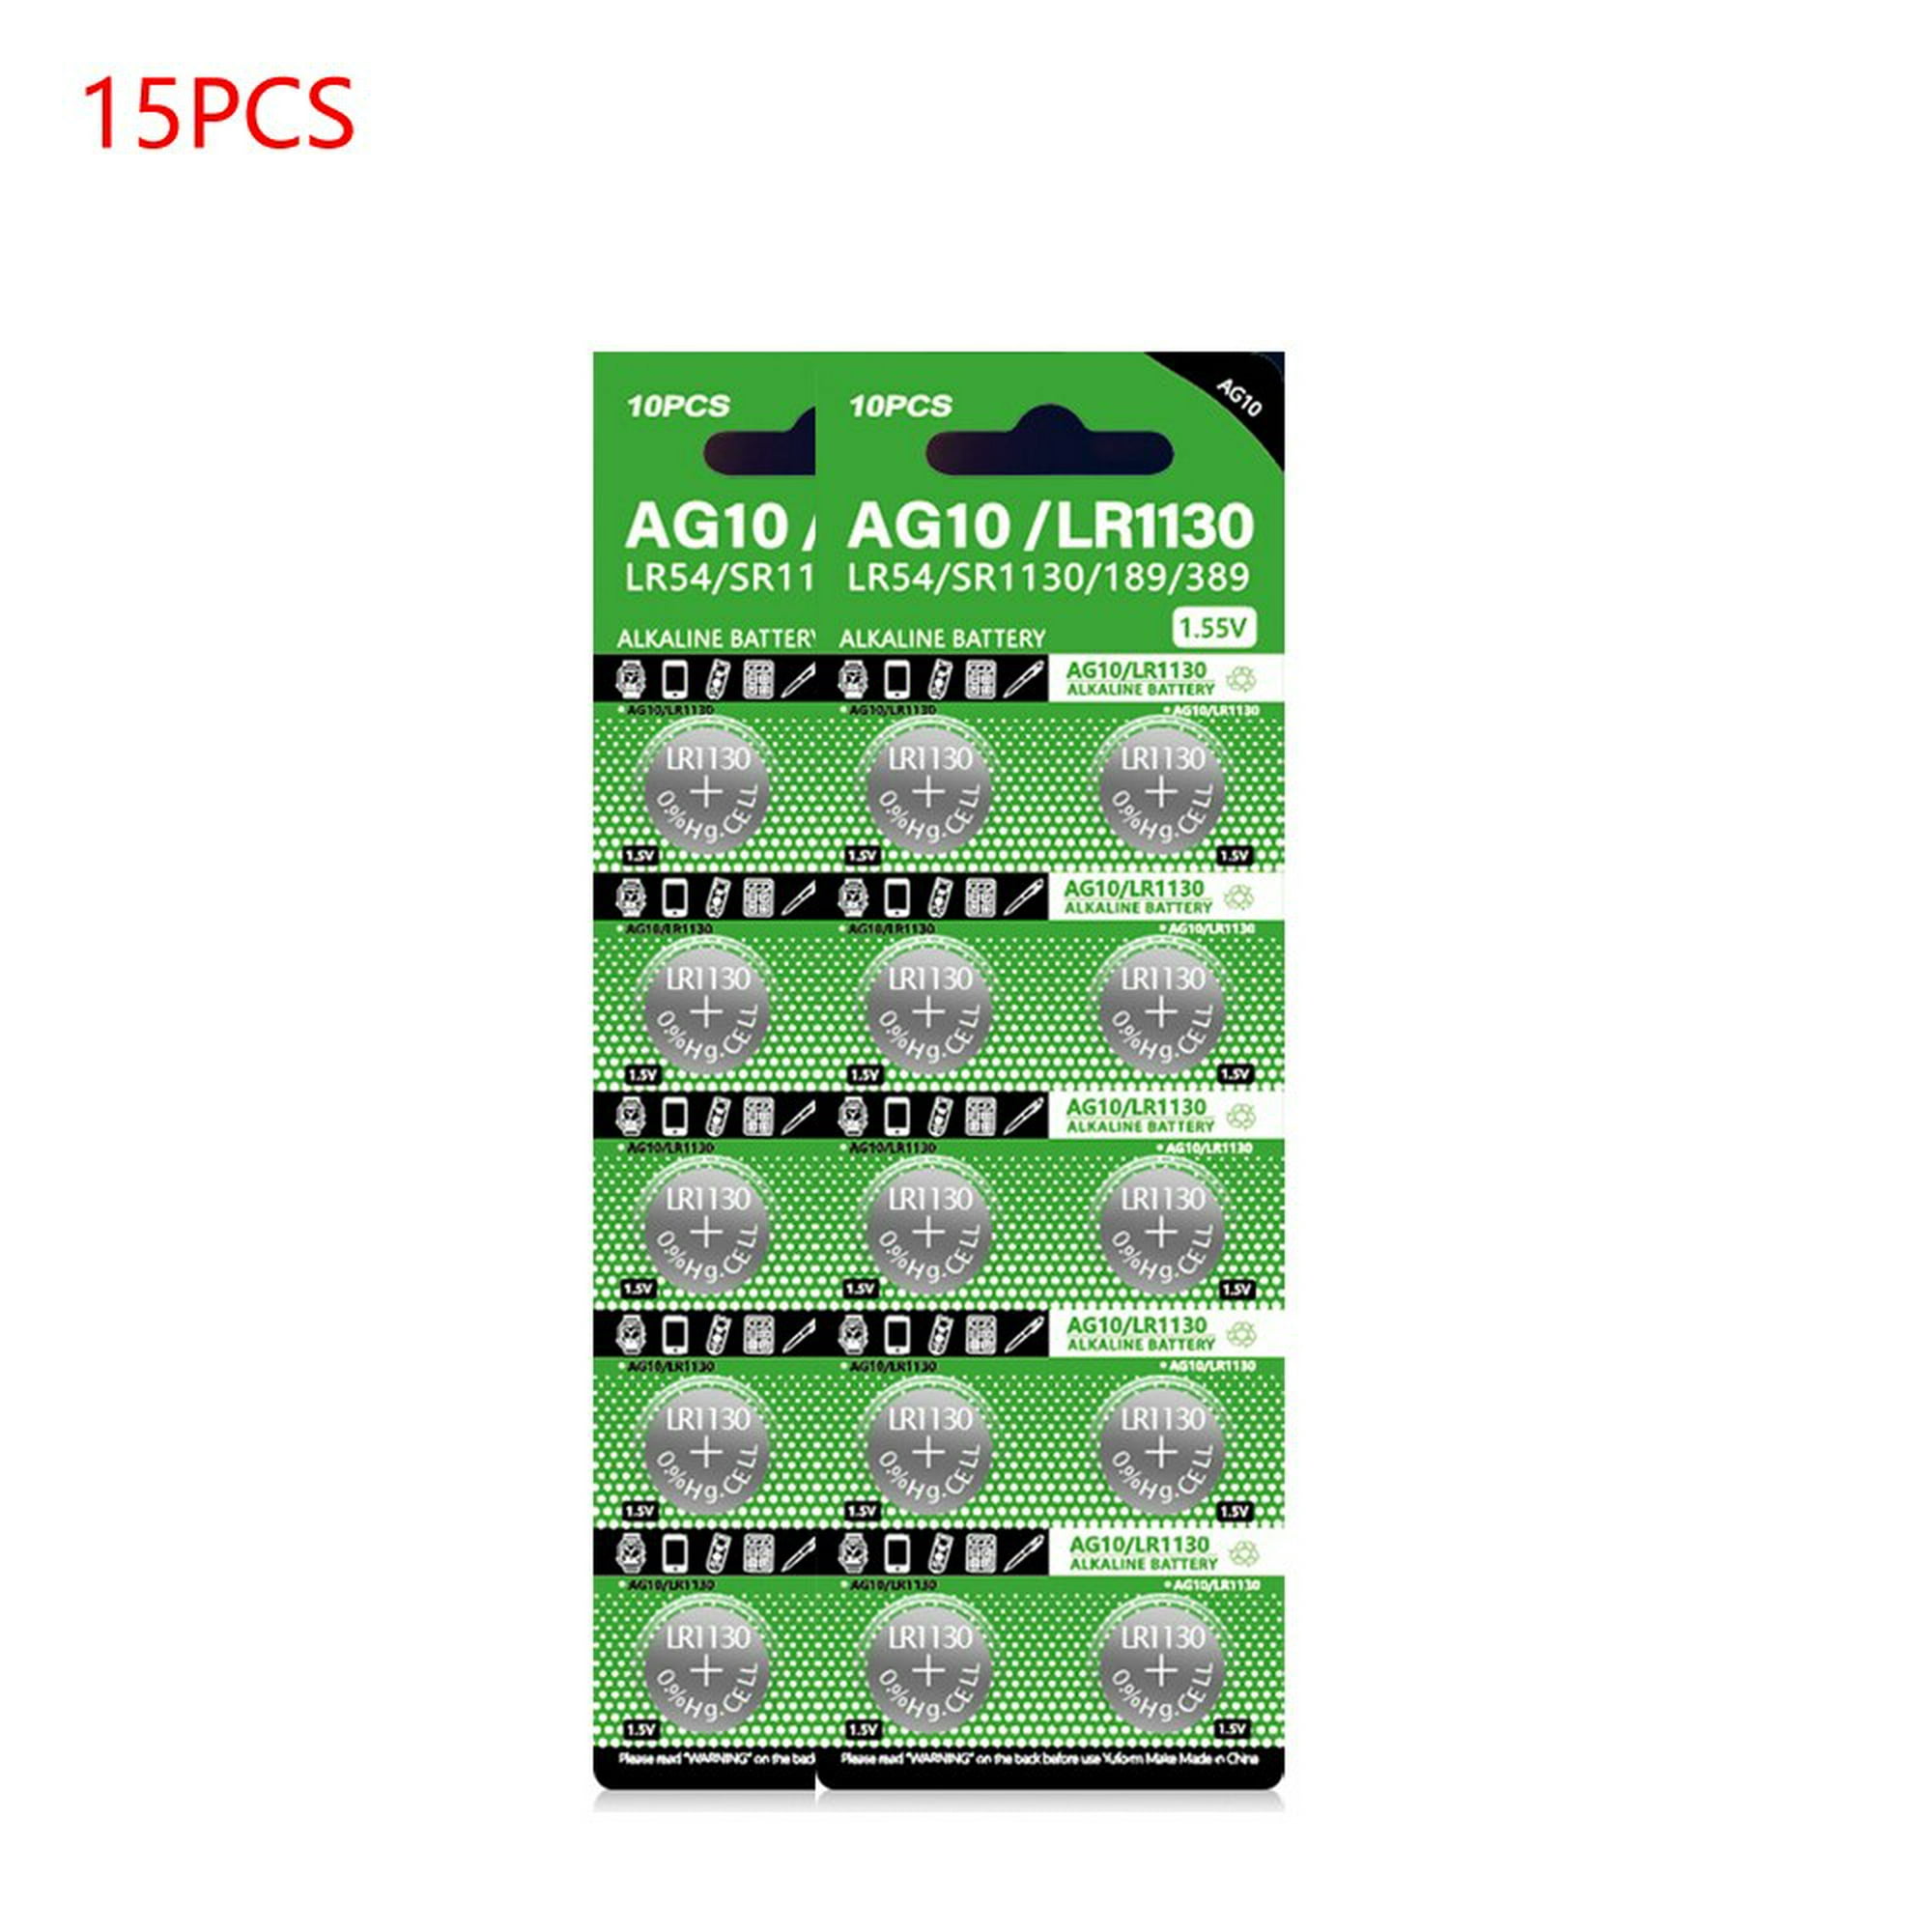 LiCB Paquete de 40 pilas de botón alcalinas LR1130 AG10 de 1,5 V